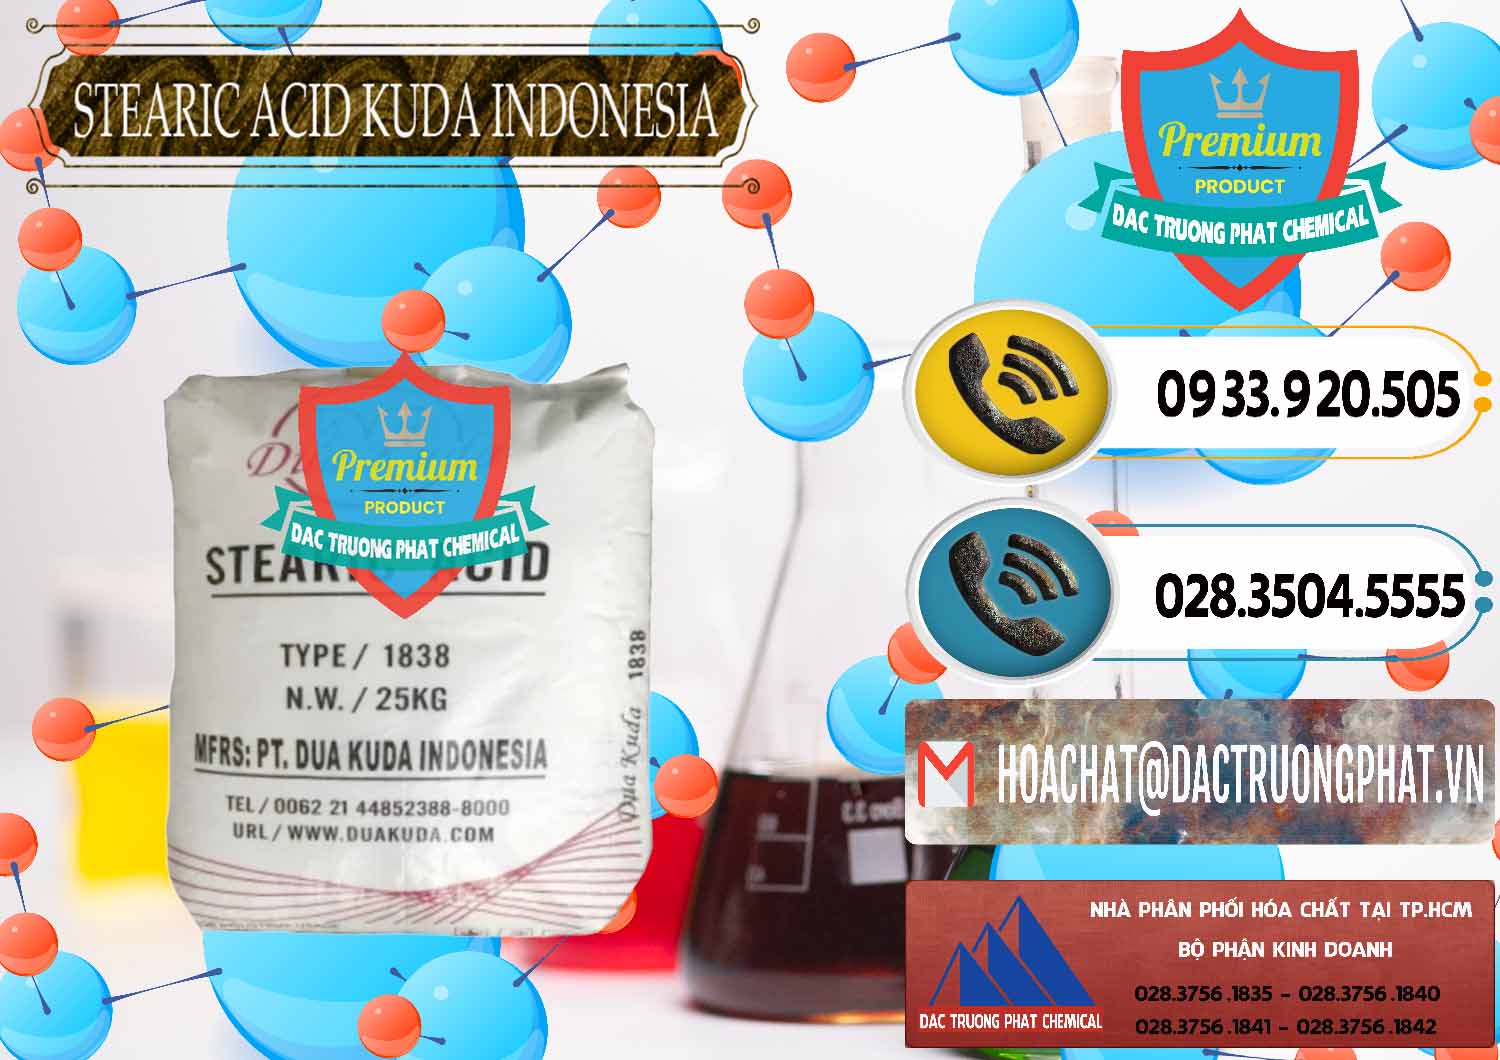 Cty chuyên cung ứng & bán Axit Stearic - Stearic Acid Dua Kuda Indonesia - 0388 - Đơn vị chuyên nhập khẩu _ phân phối hóa chất tại TP.HCM - hoachatdetnhuom.vn